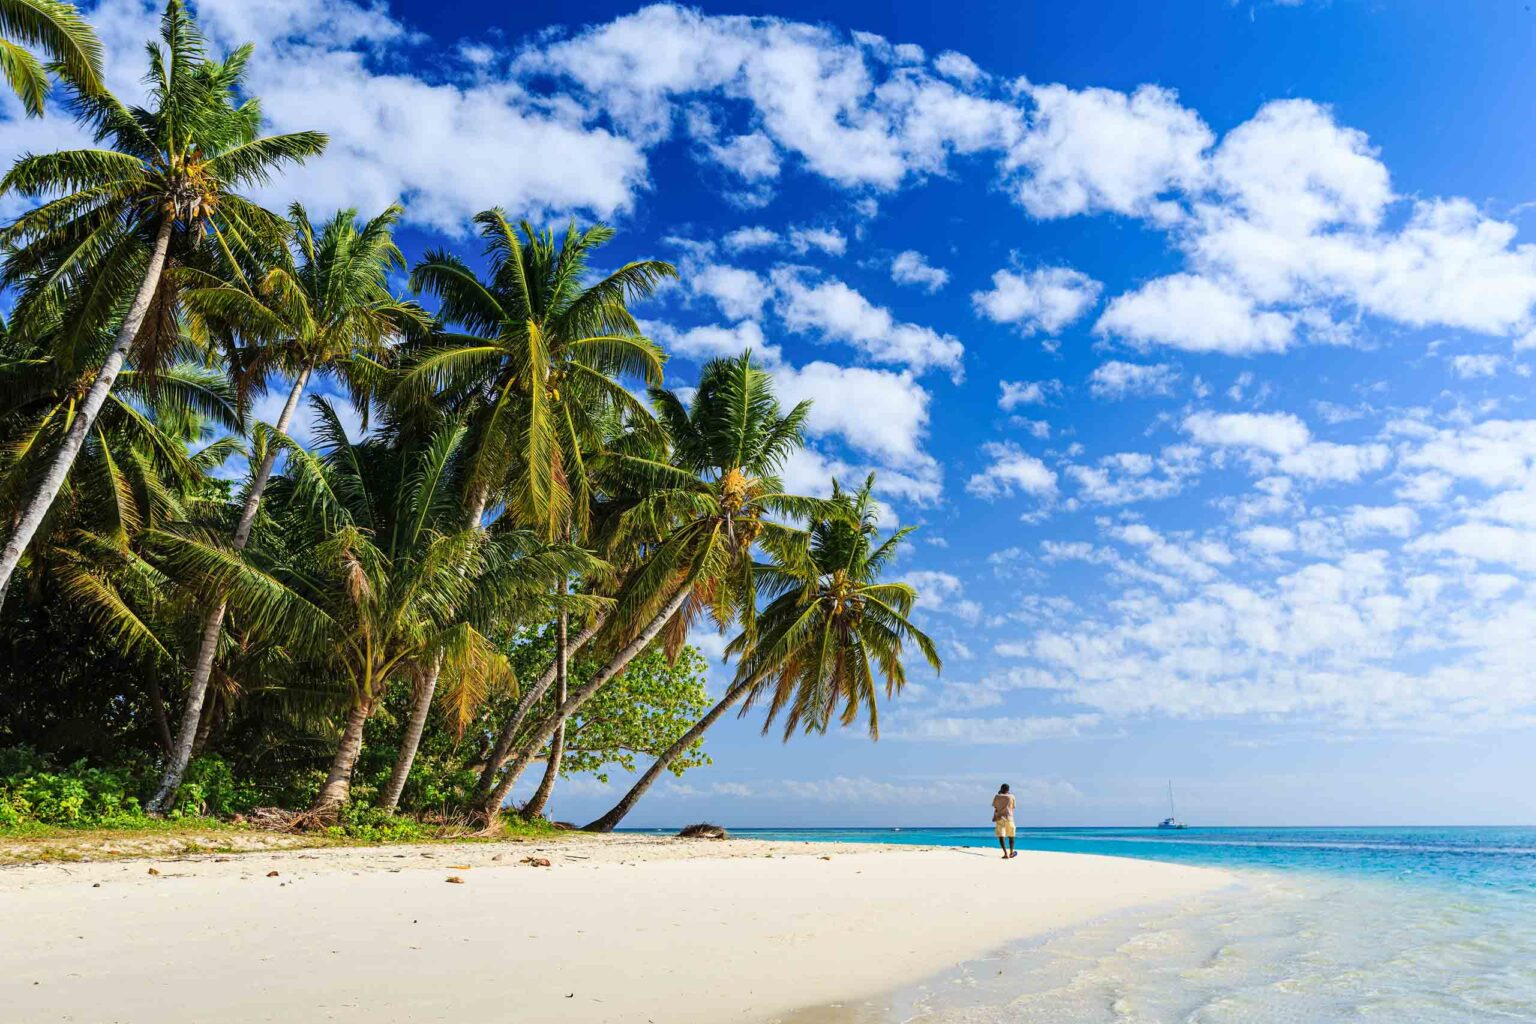 A beach in Madagascar.